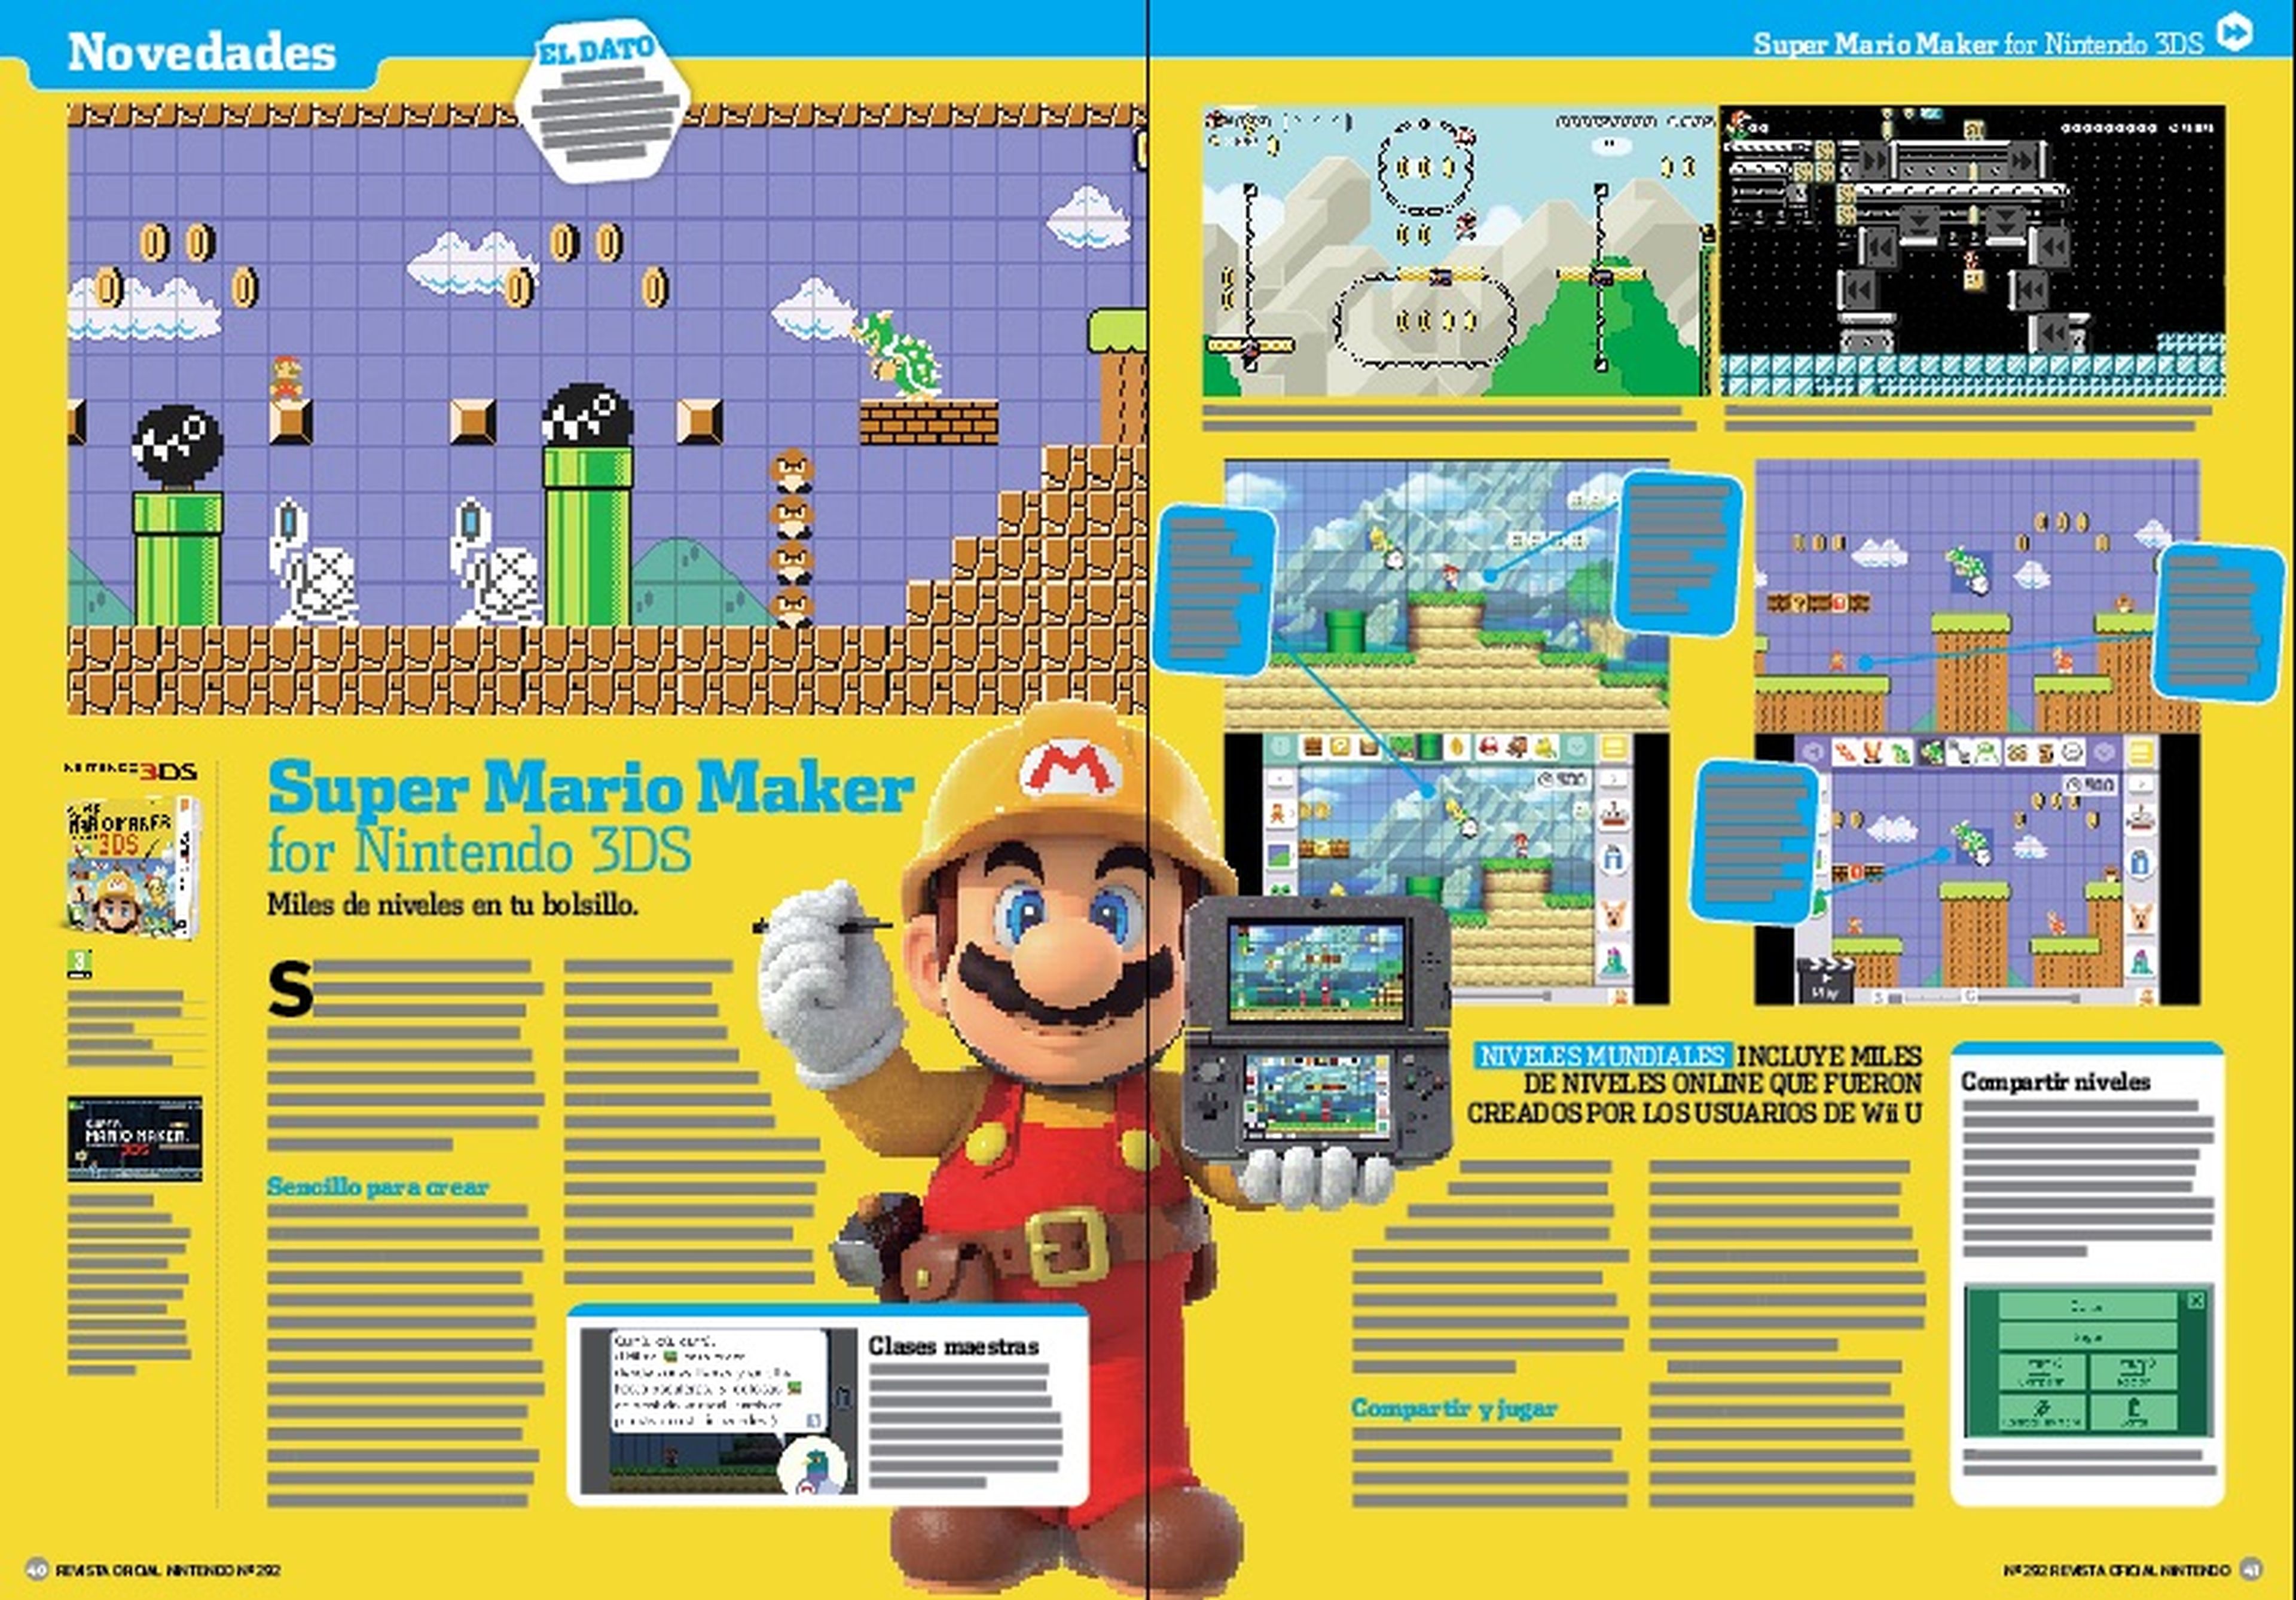 Análisis de Super Mario Maker for Nintendo 3DS